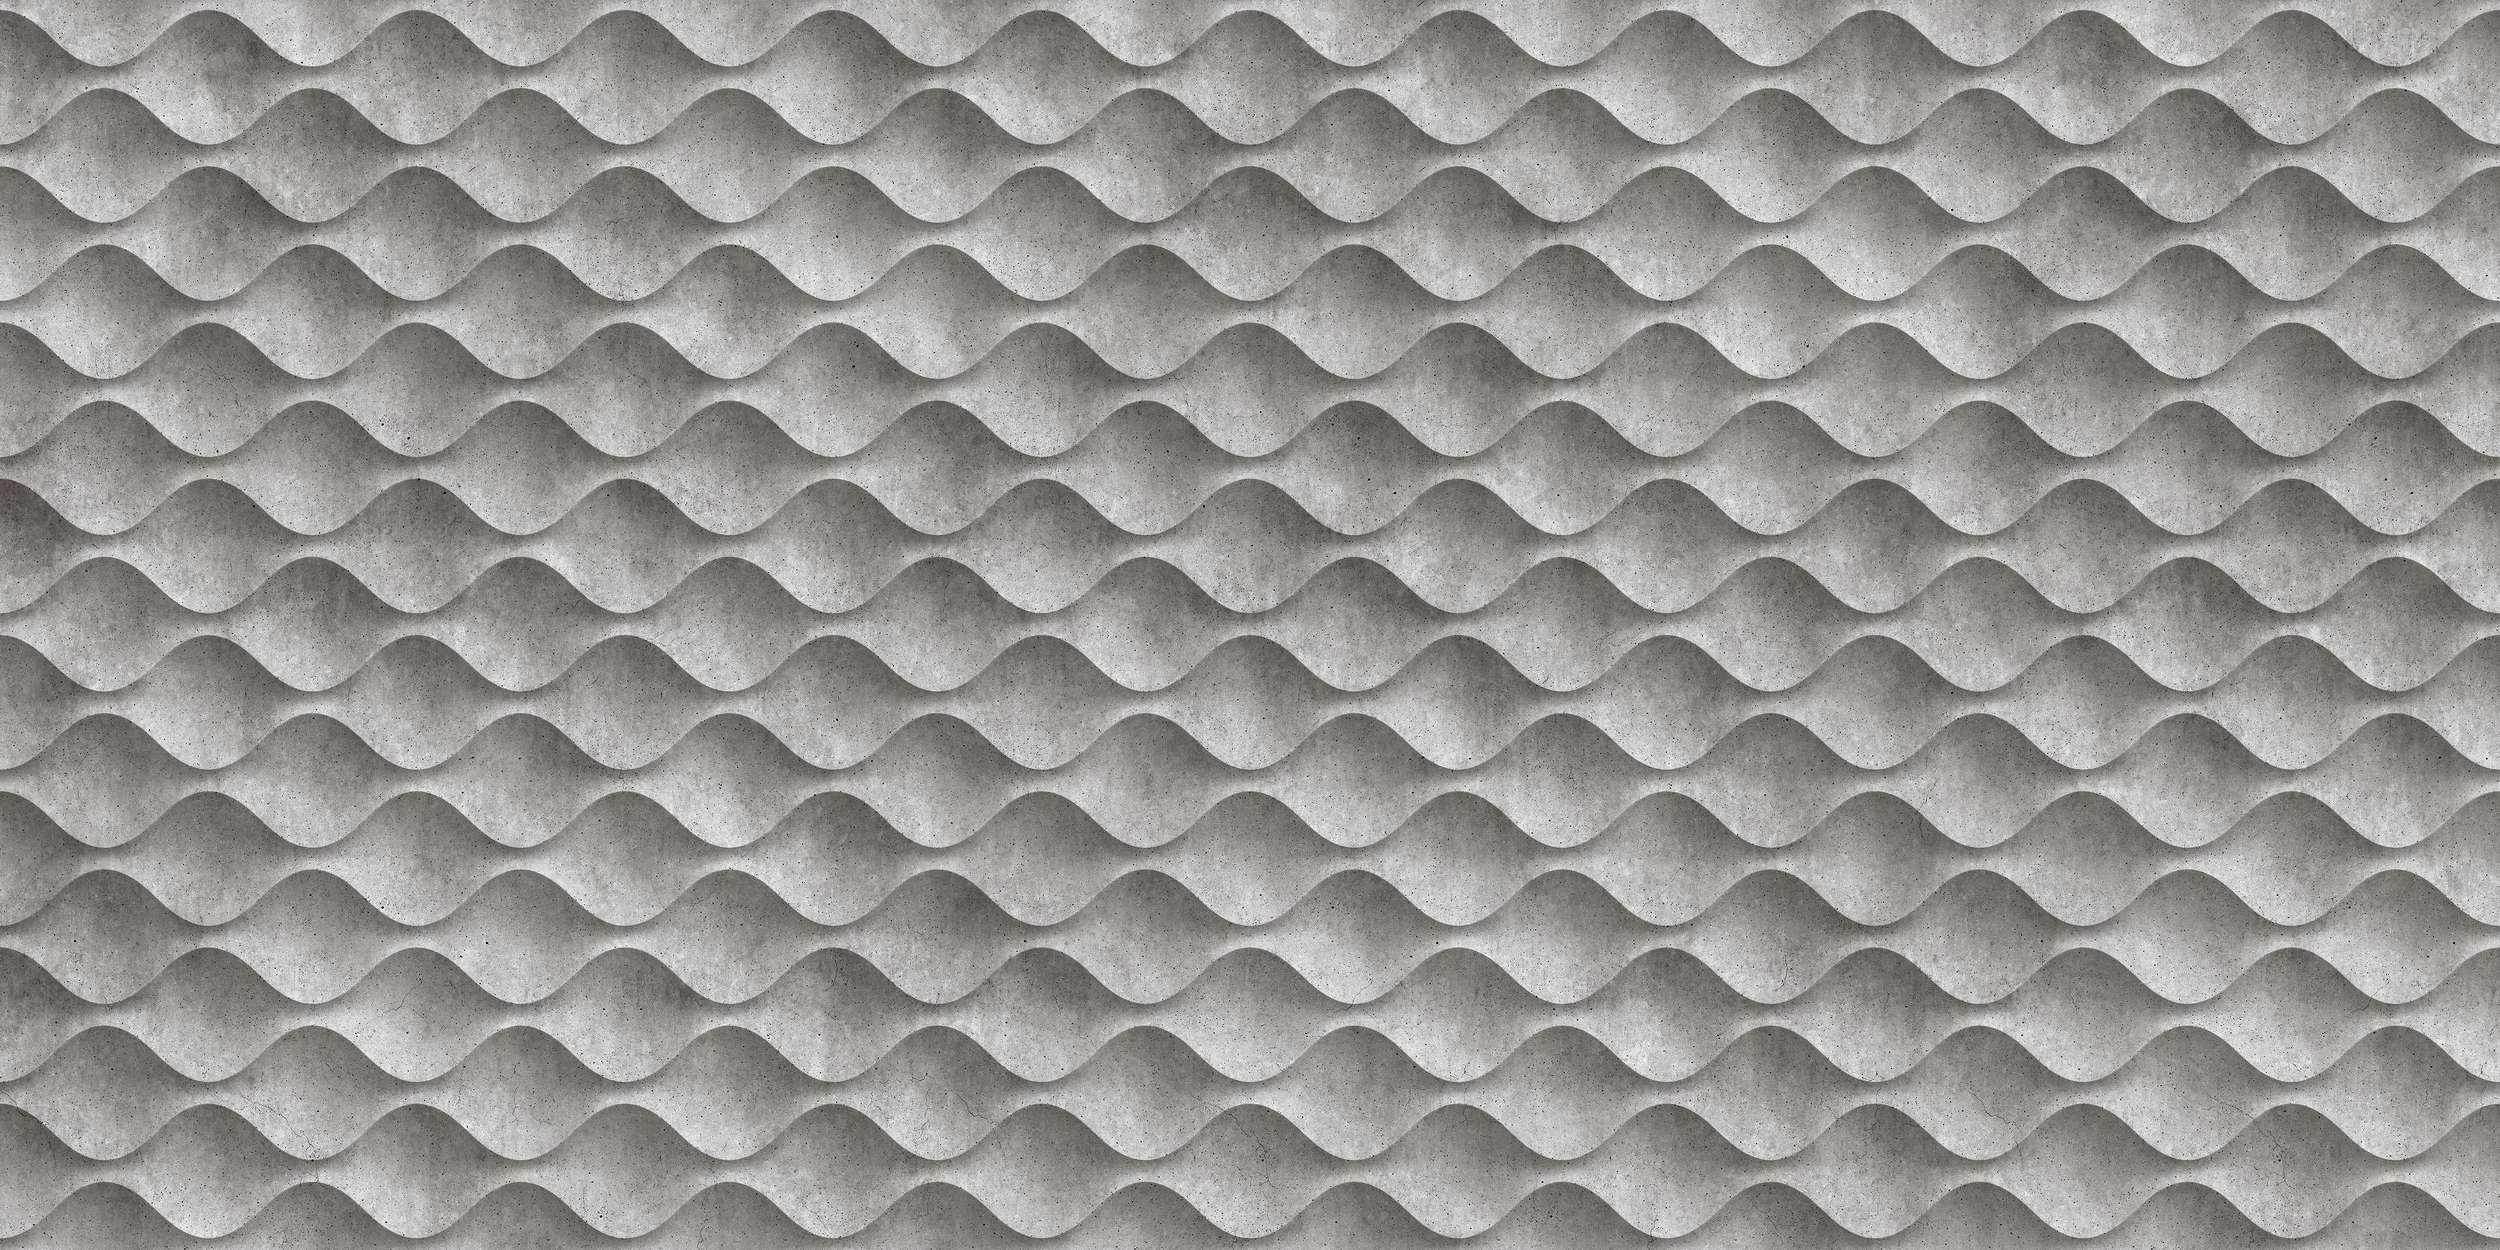             Concrete 1 - Carta da parati a onde di cemento 3D - Grigio, nero e liscio opaco
        